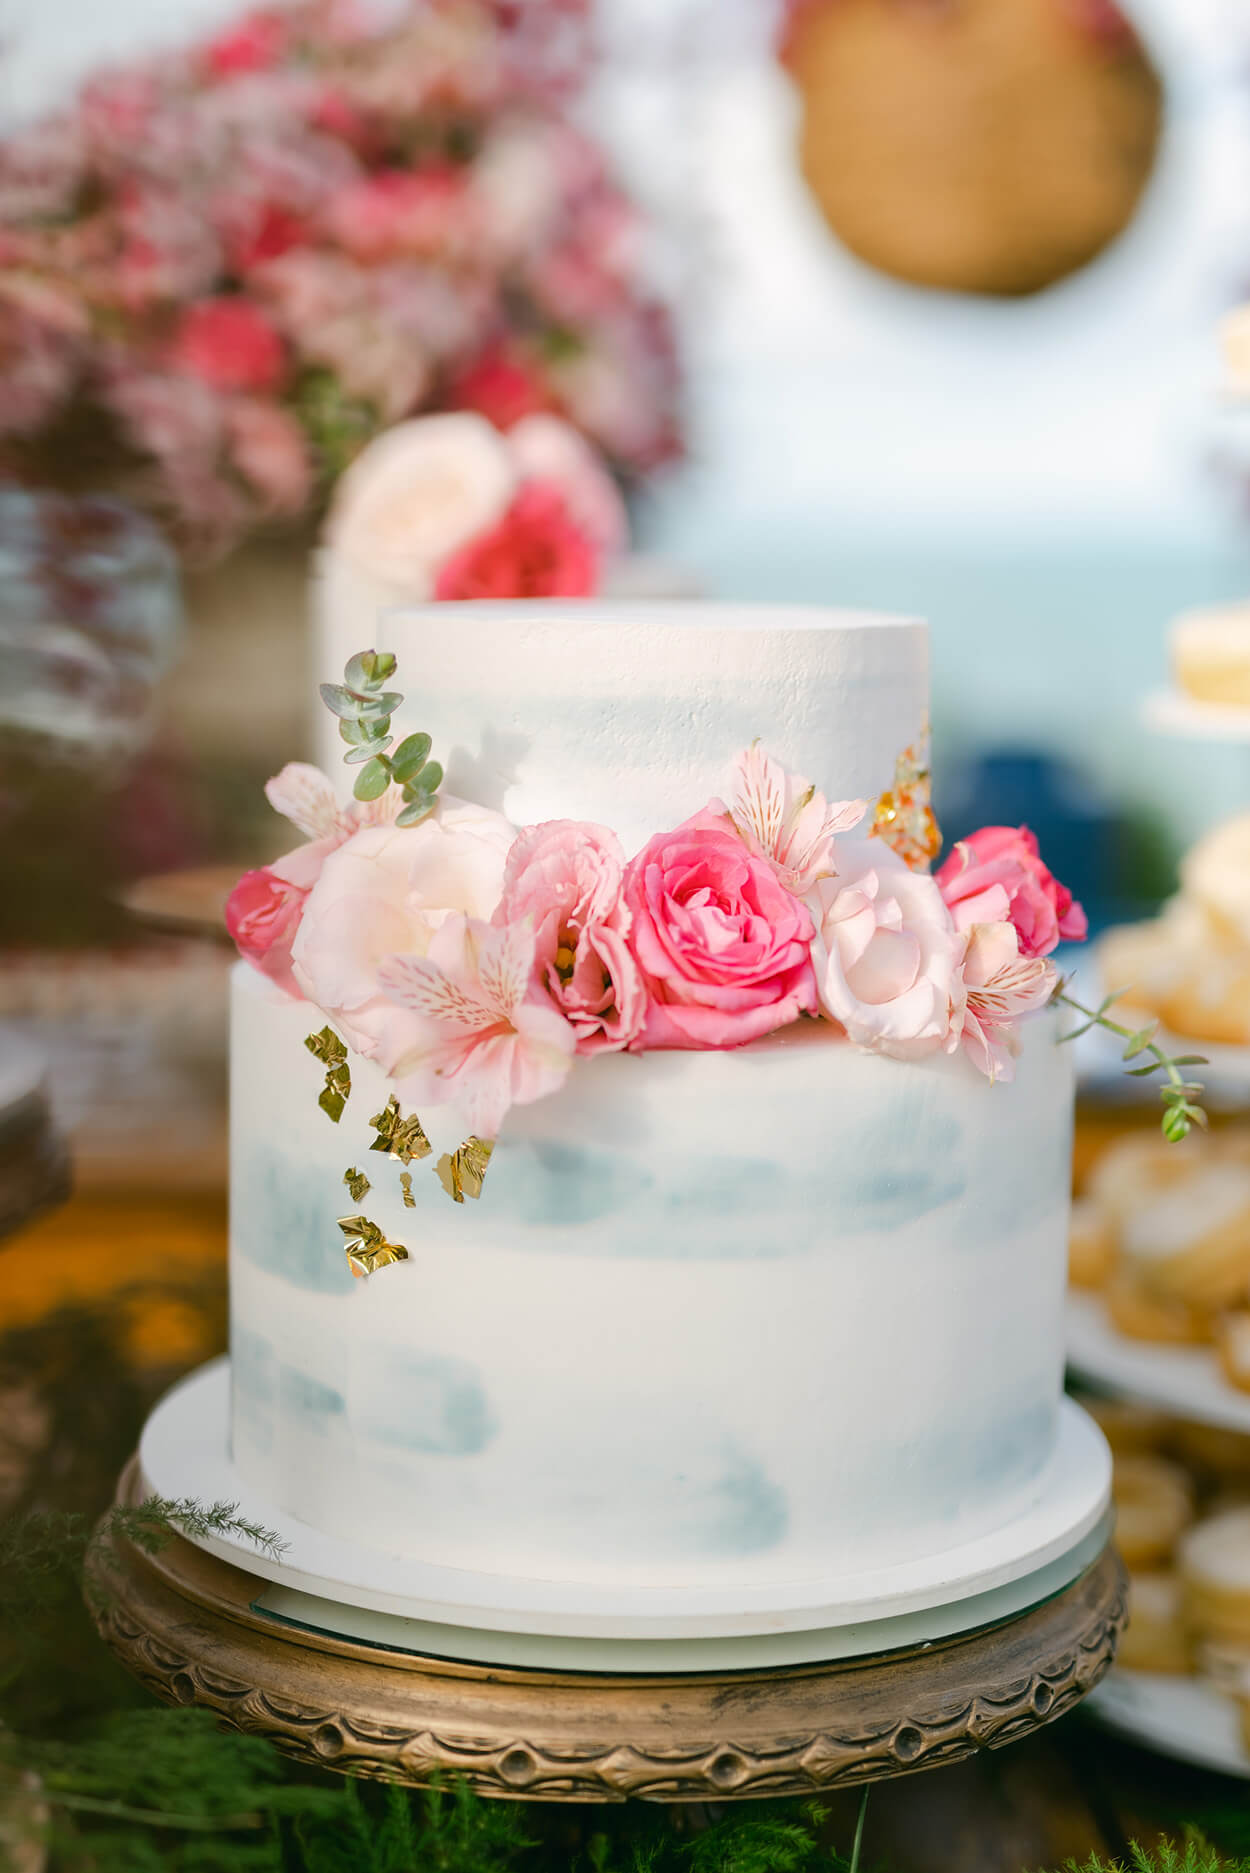 Bolo de casamento branco semi espatulado com rosas no topo